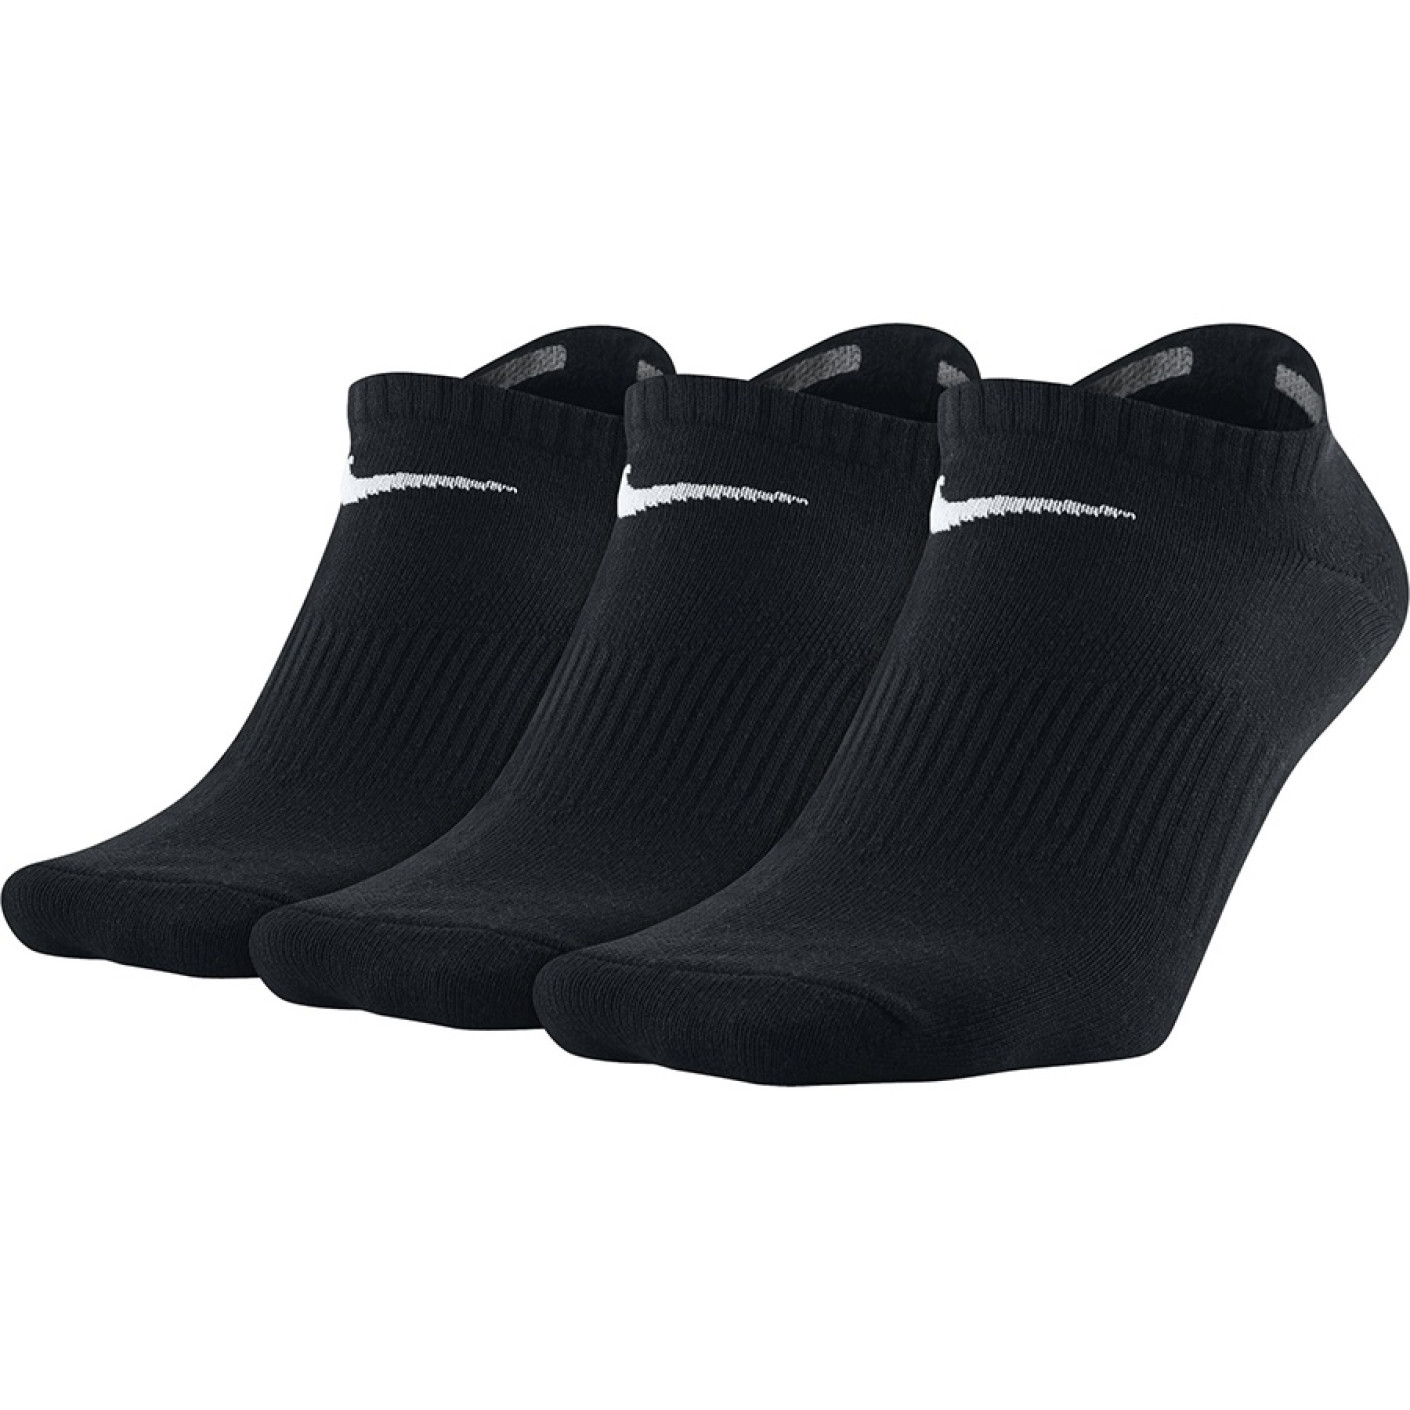 Nike Lightweight Enkelsokken Zwart Wit